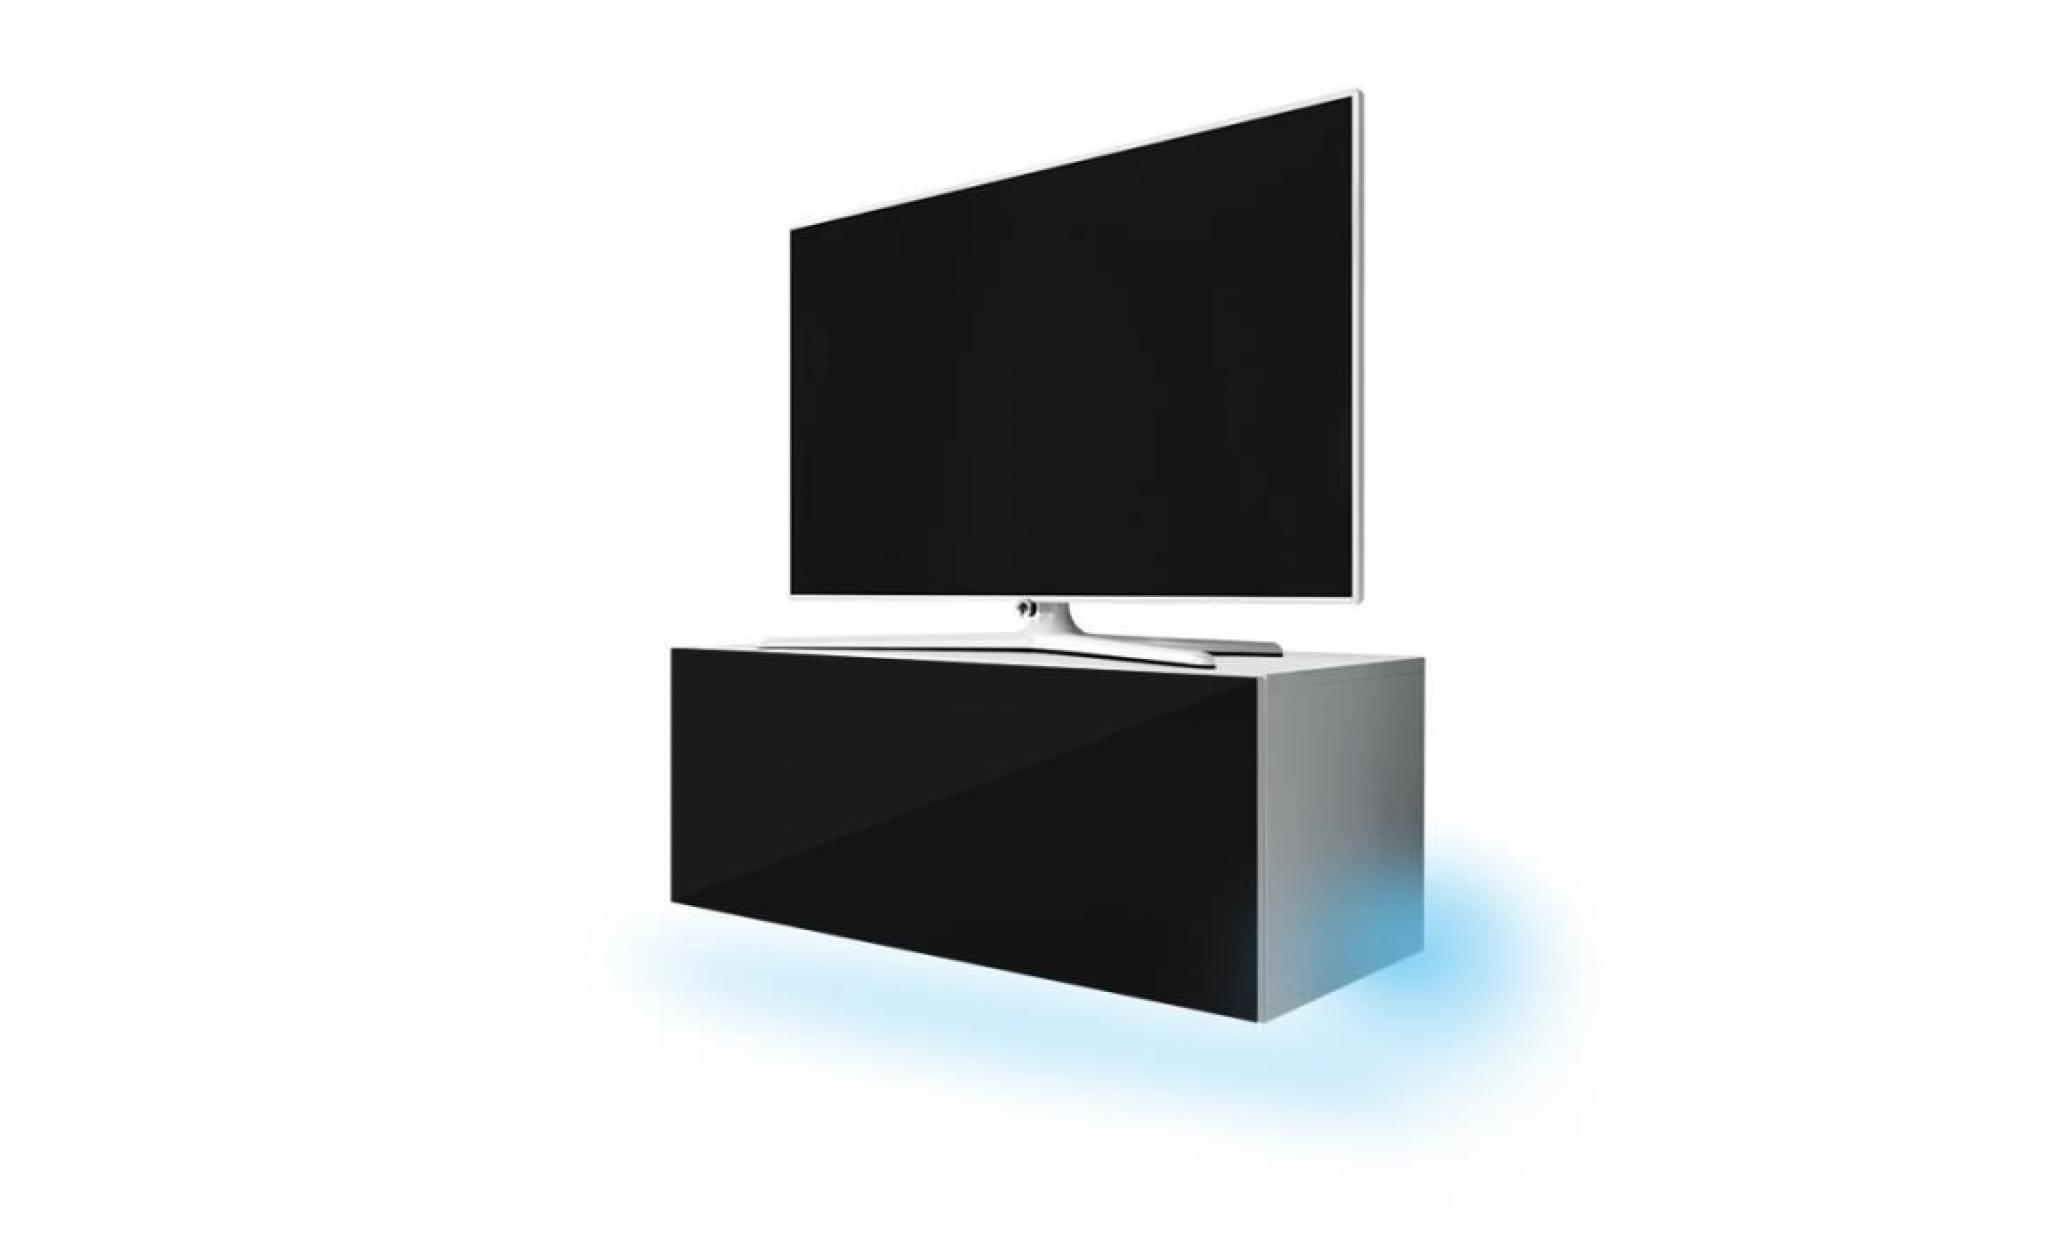 meuble tv / meuble de salon suspendu   lana   140 cm   blanc mat / noir brillant   avec led   style moderne   style classique pas cher